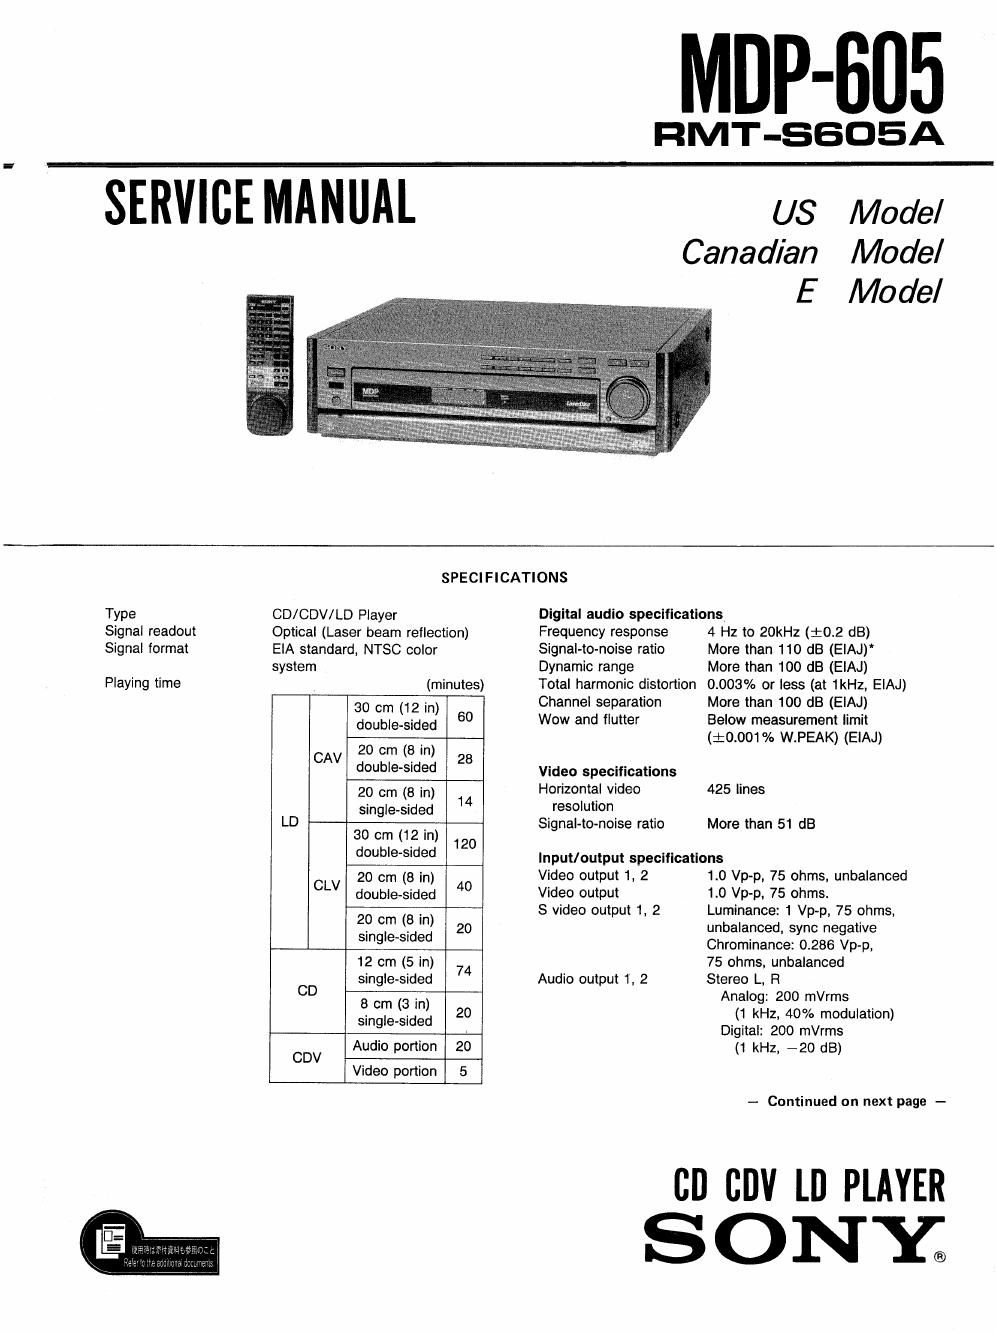 sony mdp 605 service manual